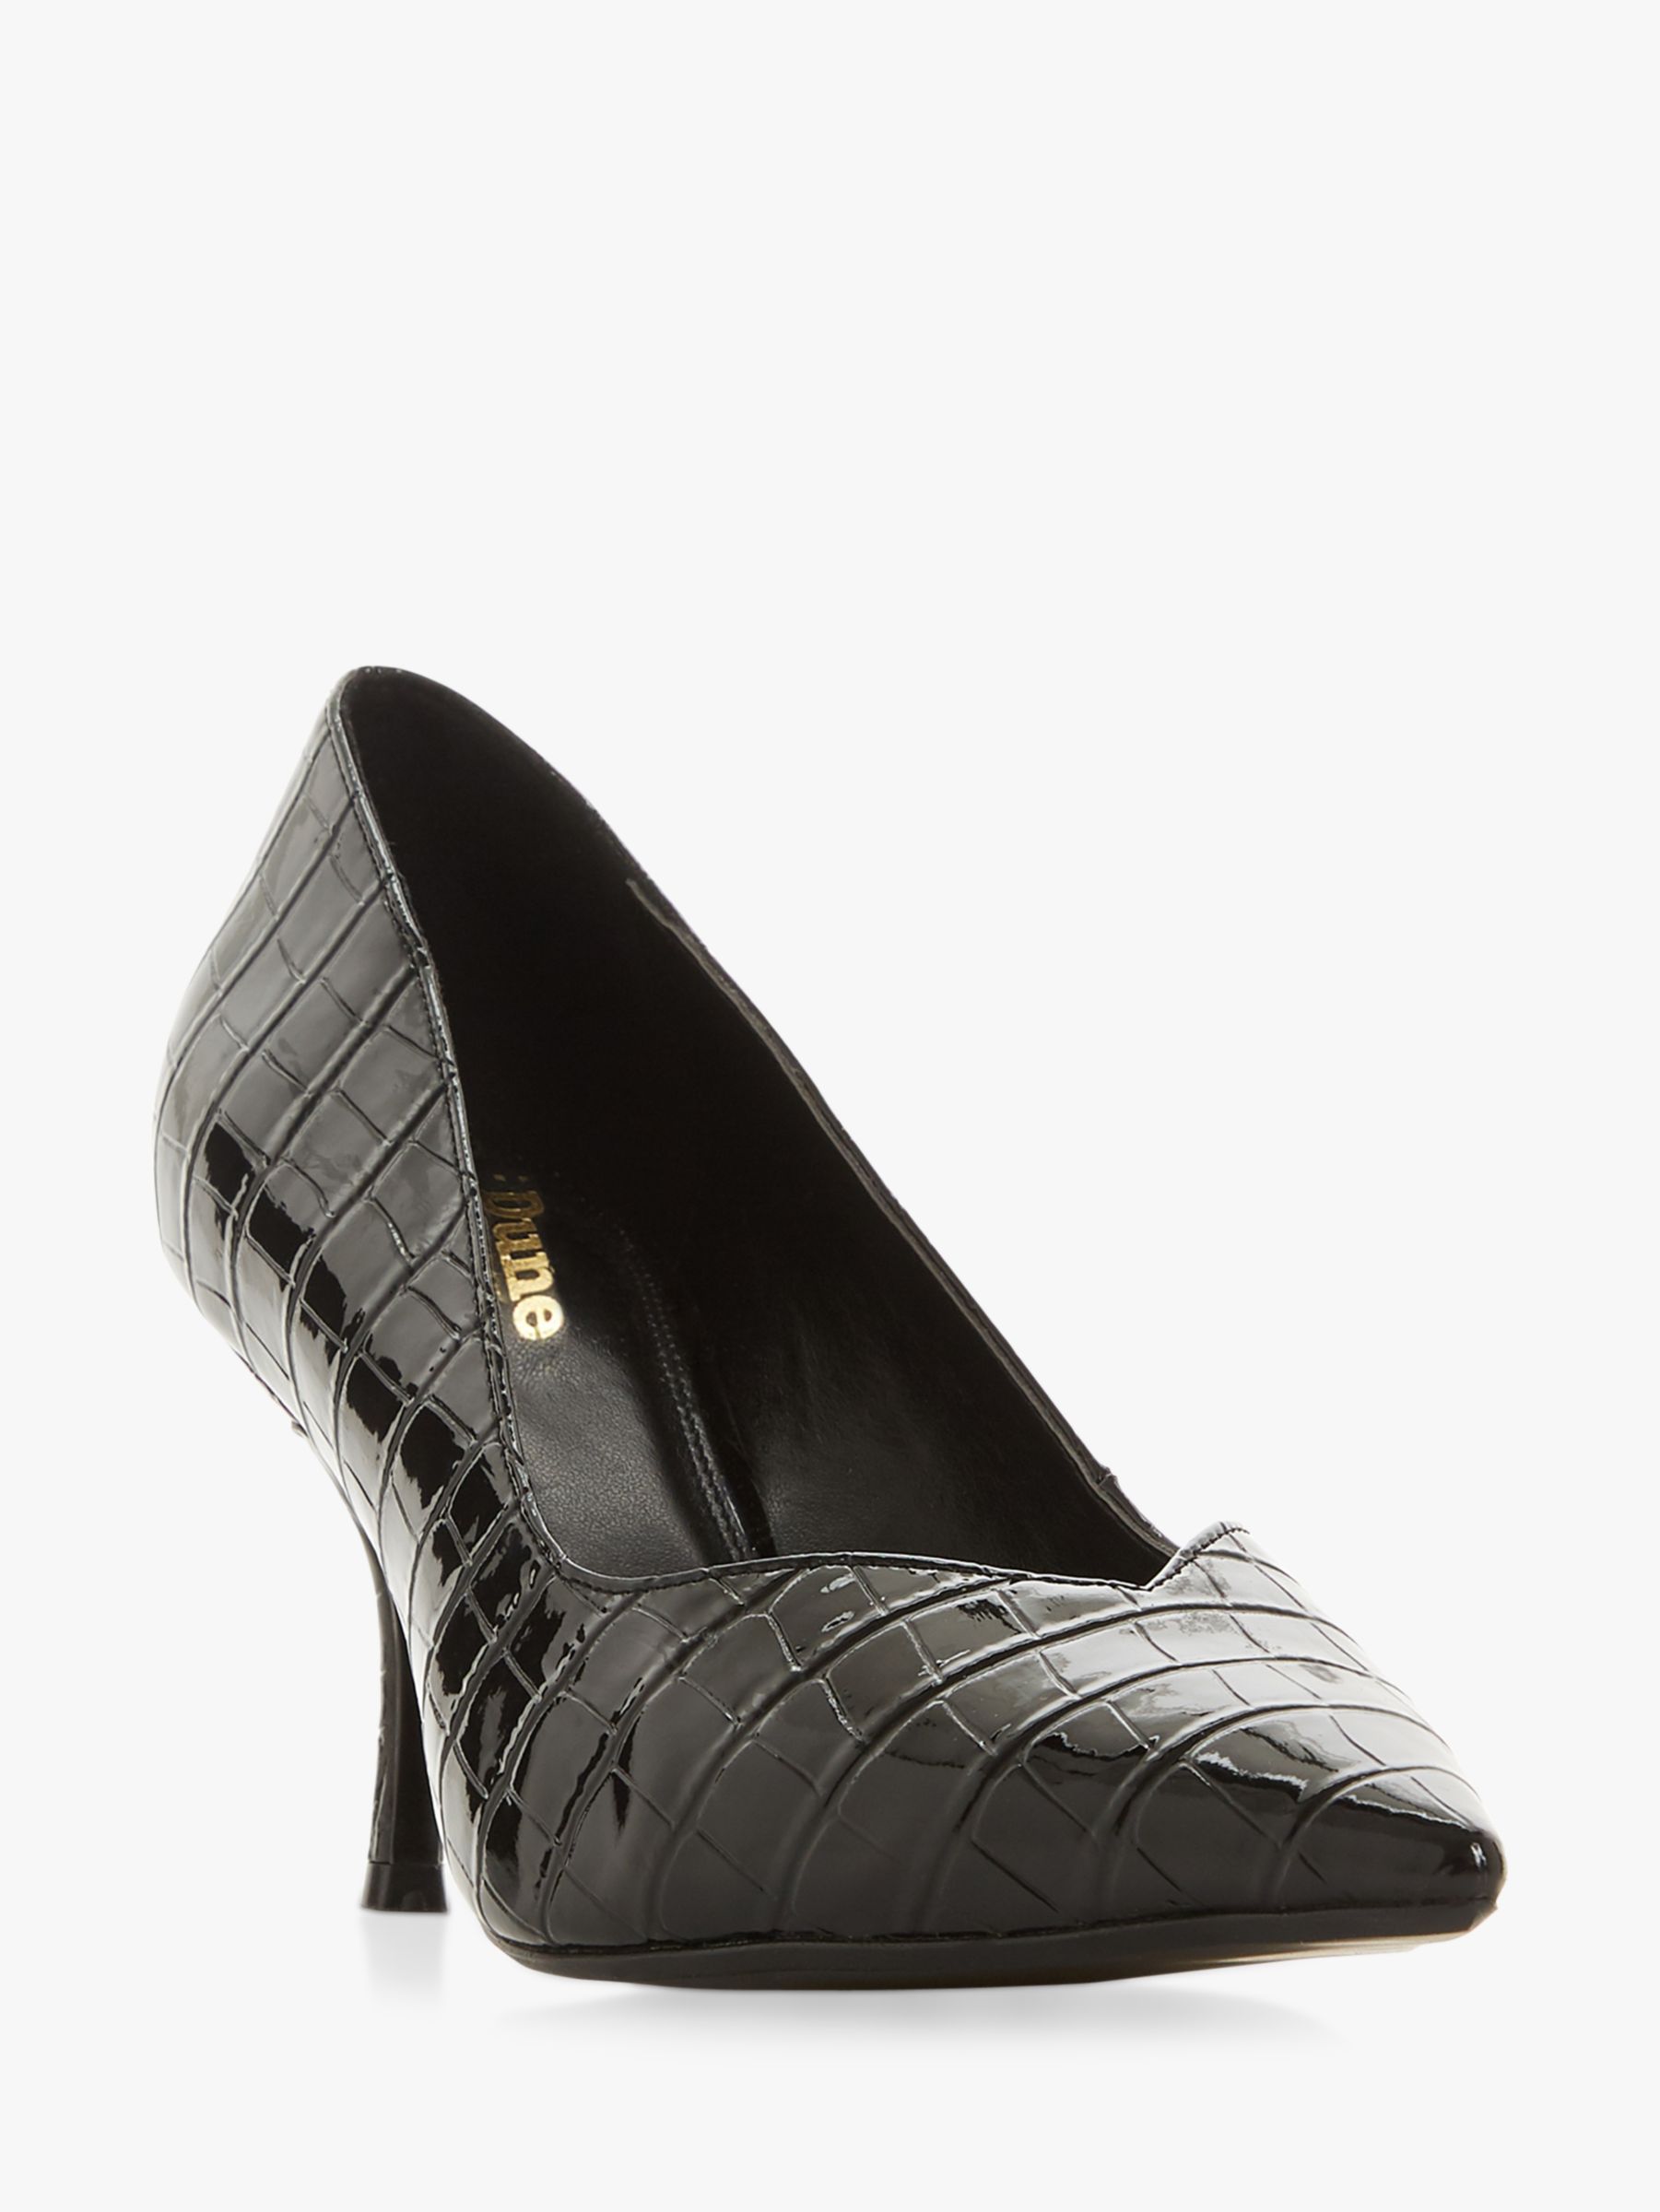 black croc court shoes